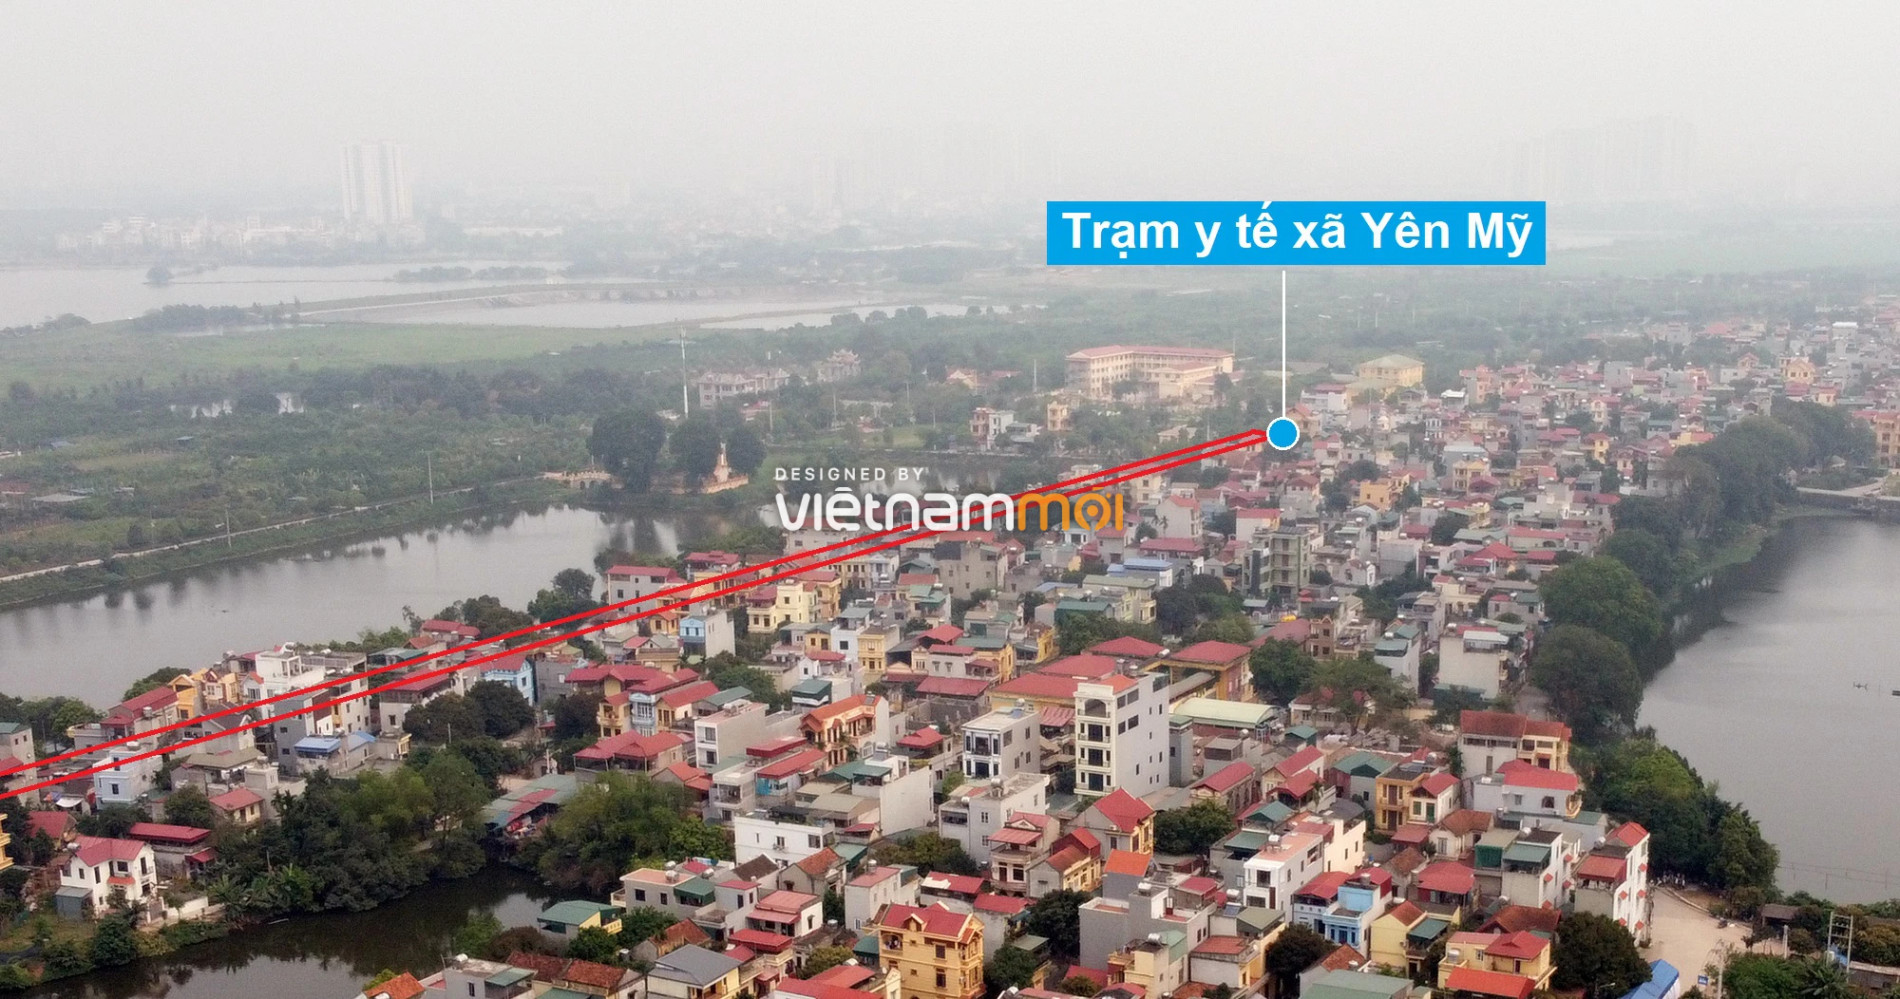 Những khu đất sắp thu hồi để mở đường ở xã Yên Mỹ, Thanh Trì, Hà Nội (phần 1) - Ảnh 12.